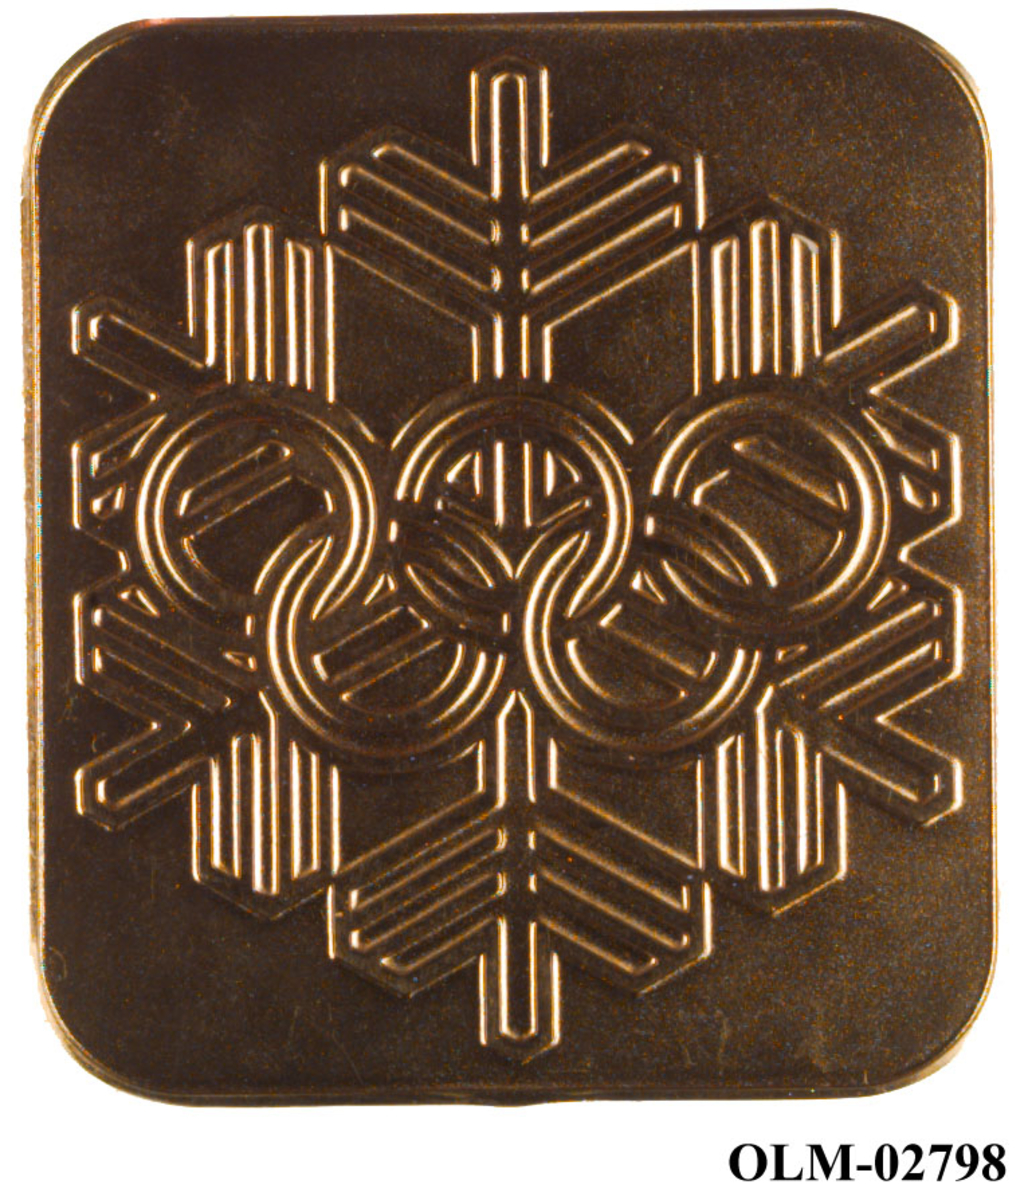 Gullfarget minnemedalje med motiv av en snøkrystall og de olympiske ringene.